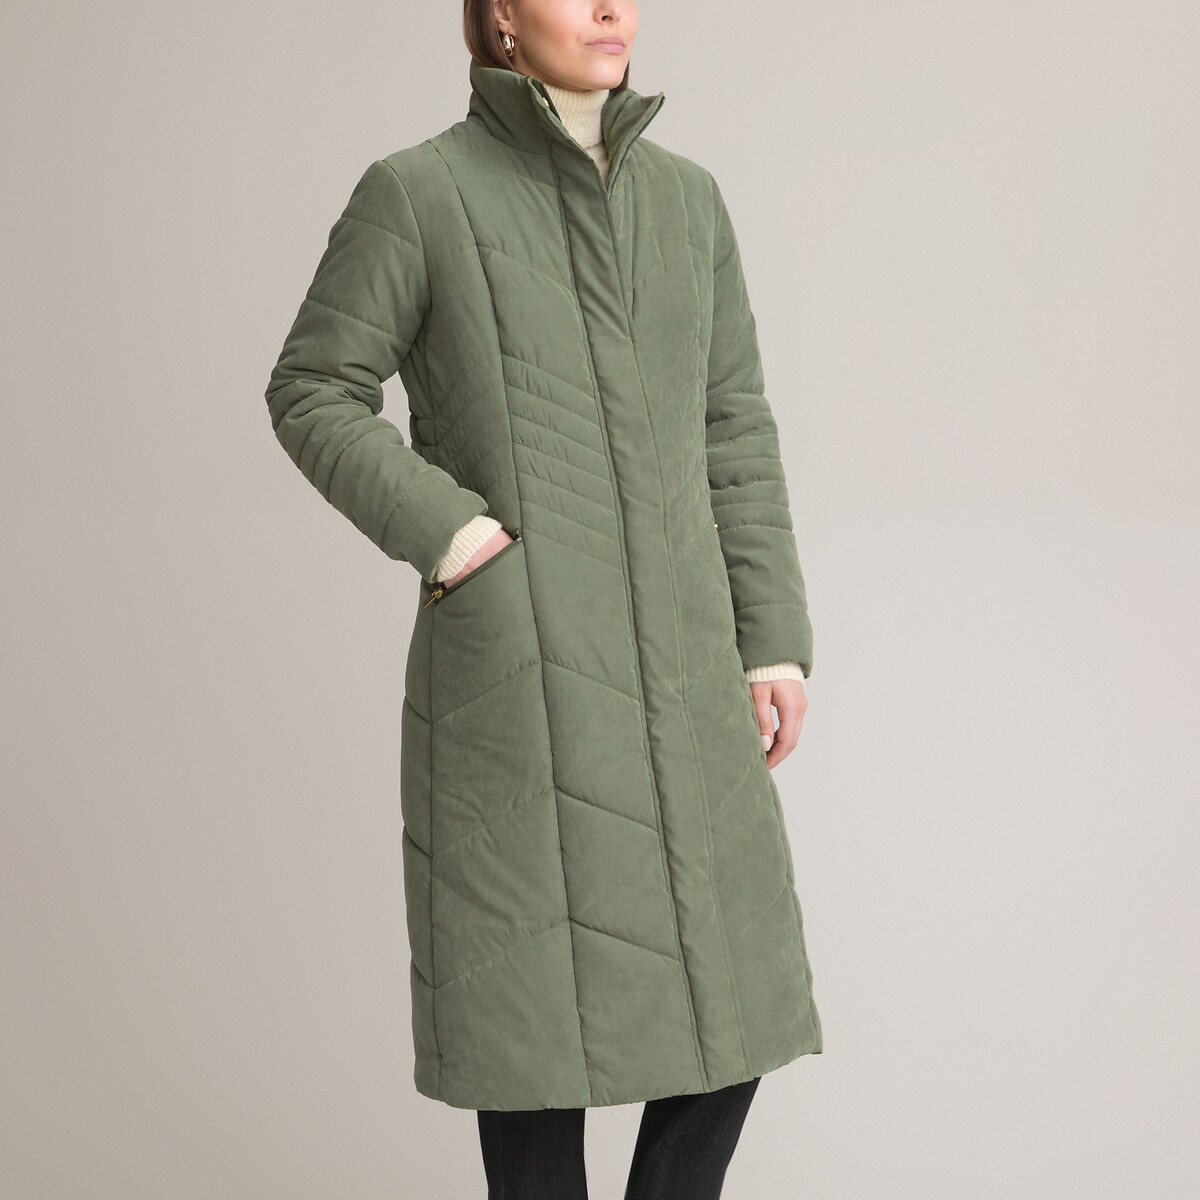 Куртка стеганая длинная застежка на молнию 54 (FR) - 60 (RUS) зеленый куртка стеганая средней длины застежка на молнию зимняя модель 40 fr 46 rus красный